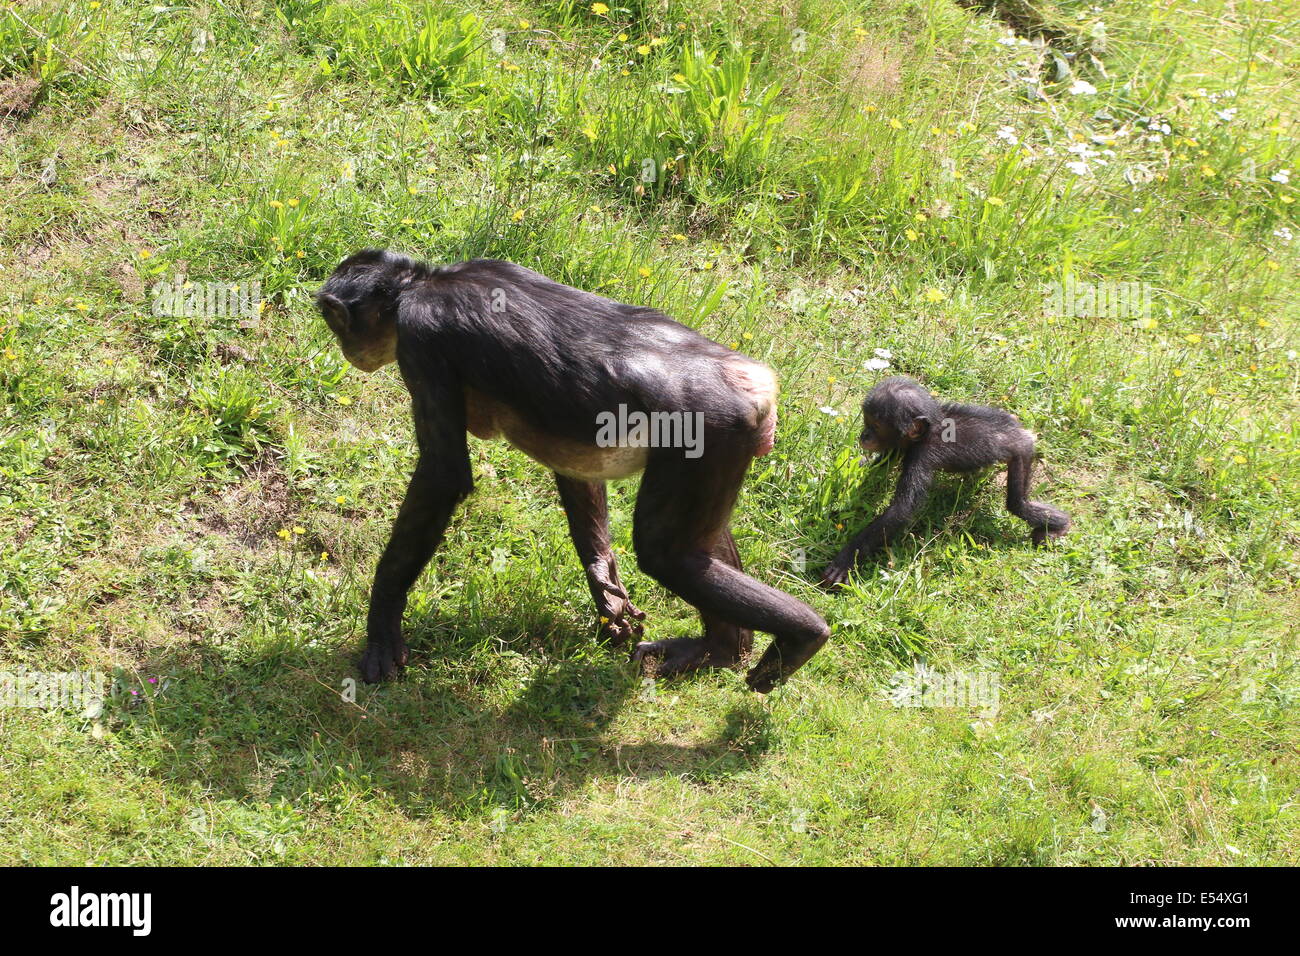 Close-up de una madre y su bebé Africano joven chimpancé bonobo (Pan paniscus) caminando en un entorno natural Foto de stock